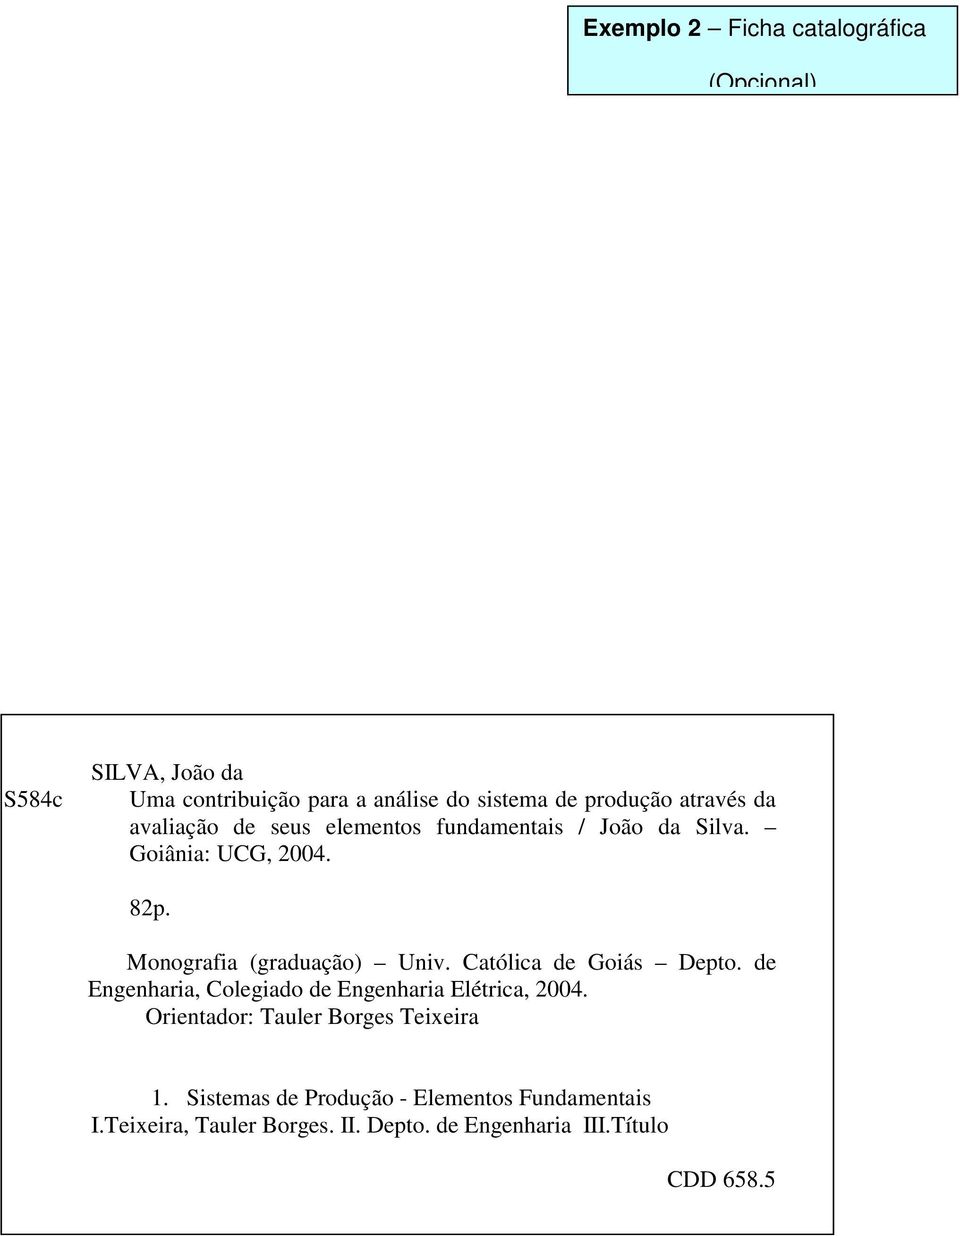 Monografia (graduação) Univ. Católica de Goiás Depto. de Engenharia, Colegiado de Engenharia Elétrica, 2004.